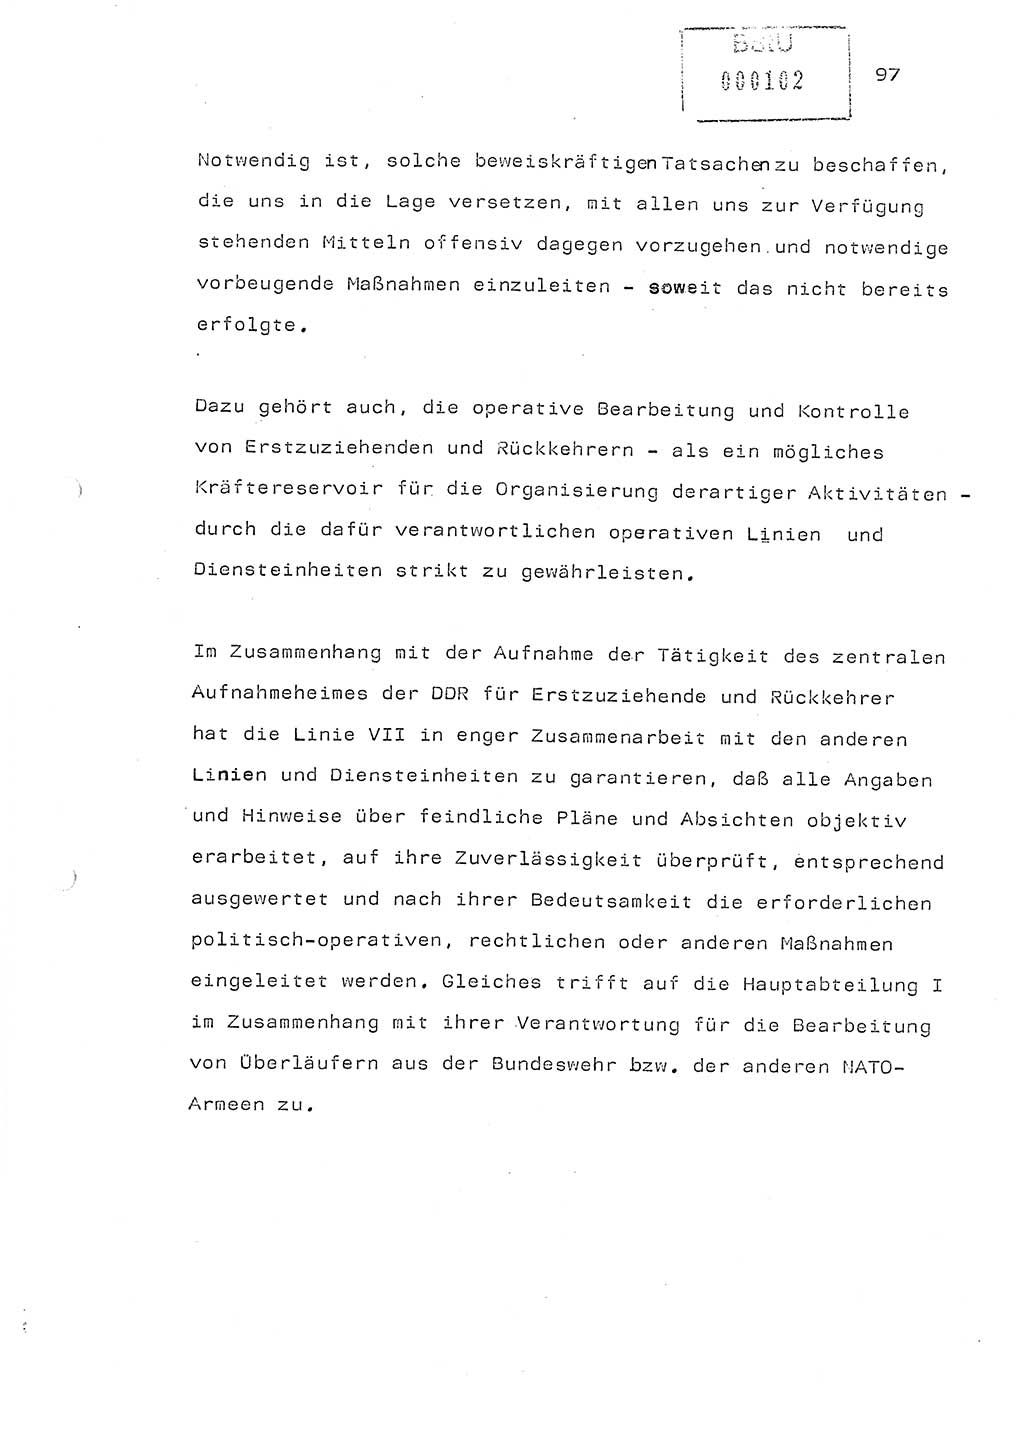 Referat (Generaloberst Erich Mielke) auf der Zentralen Dienstkonferenz am 24.5.1979 [Ministerium für Staatssicherheit (MfS), Deutsche Demokratische Republik (DDR), Der Minister], Berlin 1979, Seite 97 (Ref. DK DDR MfS Min. /79 1979, S. 97)